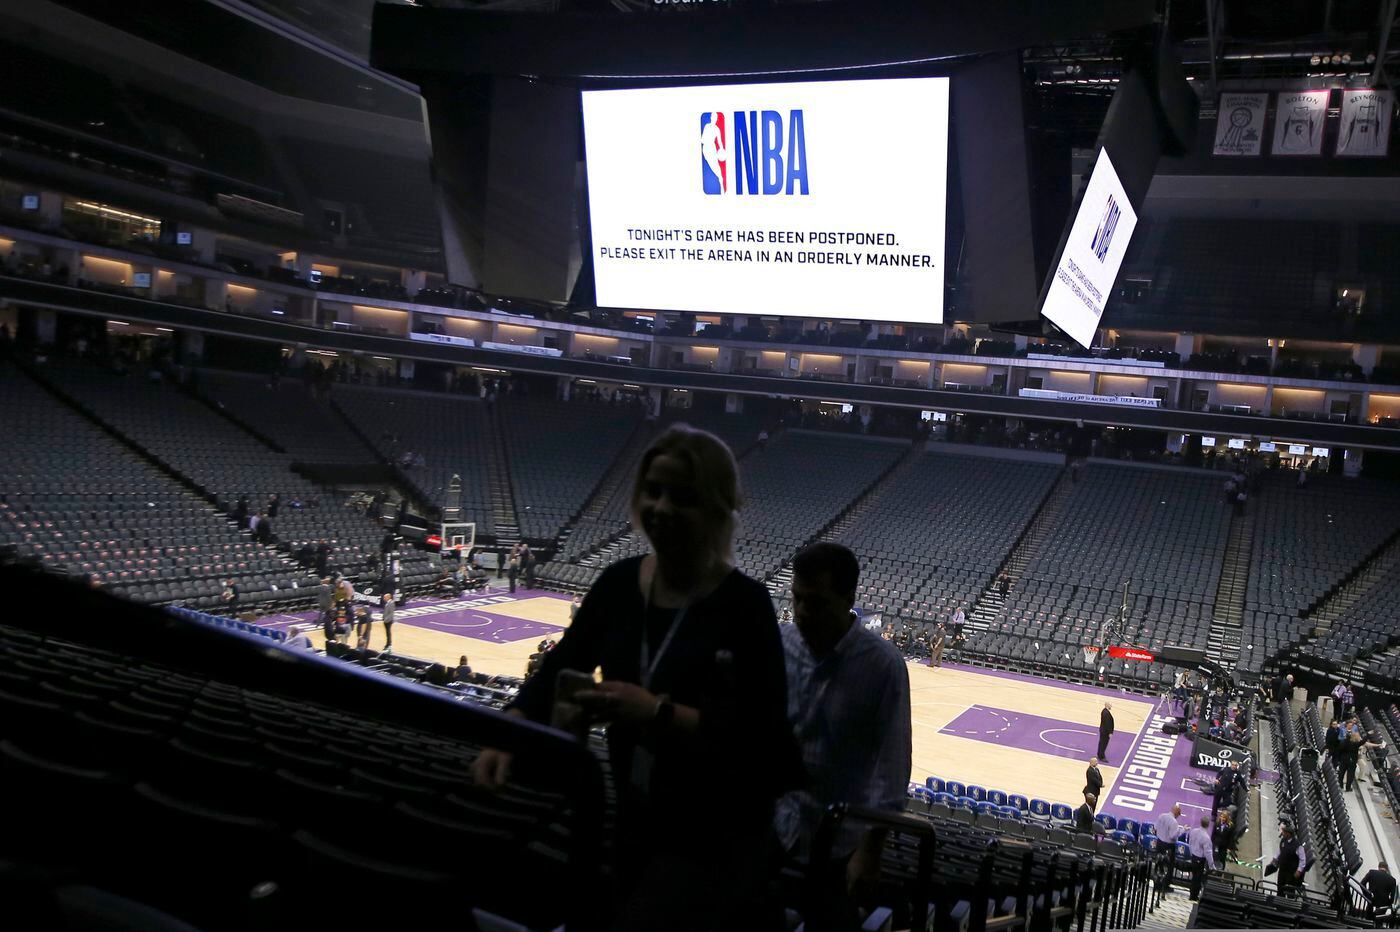 Se han cancelado eventos como de la NBA en Estados Unidos por el brote de Coronavirus (Foto: Philadelphia Inquirer)